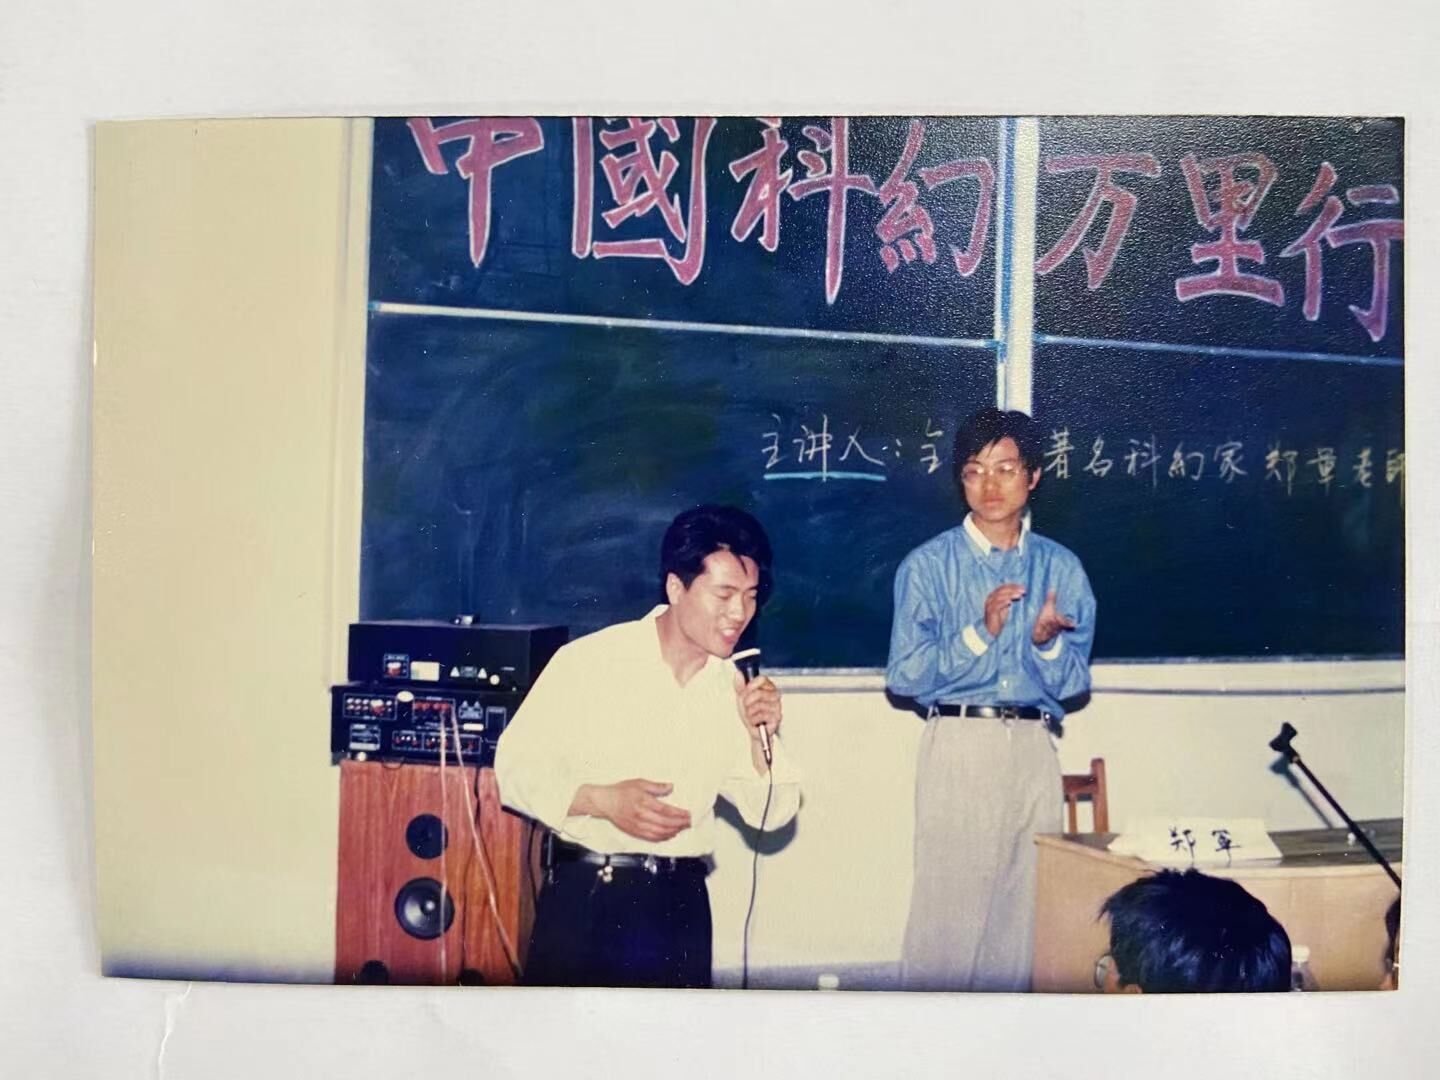 邀请郑军在吉大和光机学院（现在改名为长春理工大学）的讲座